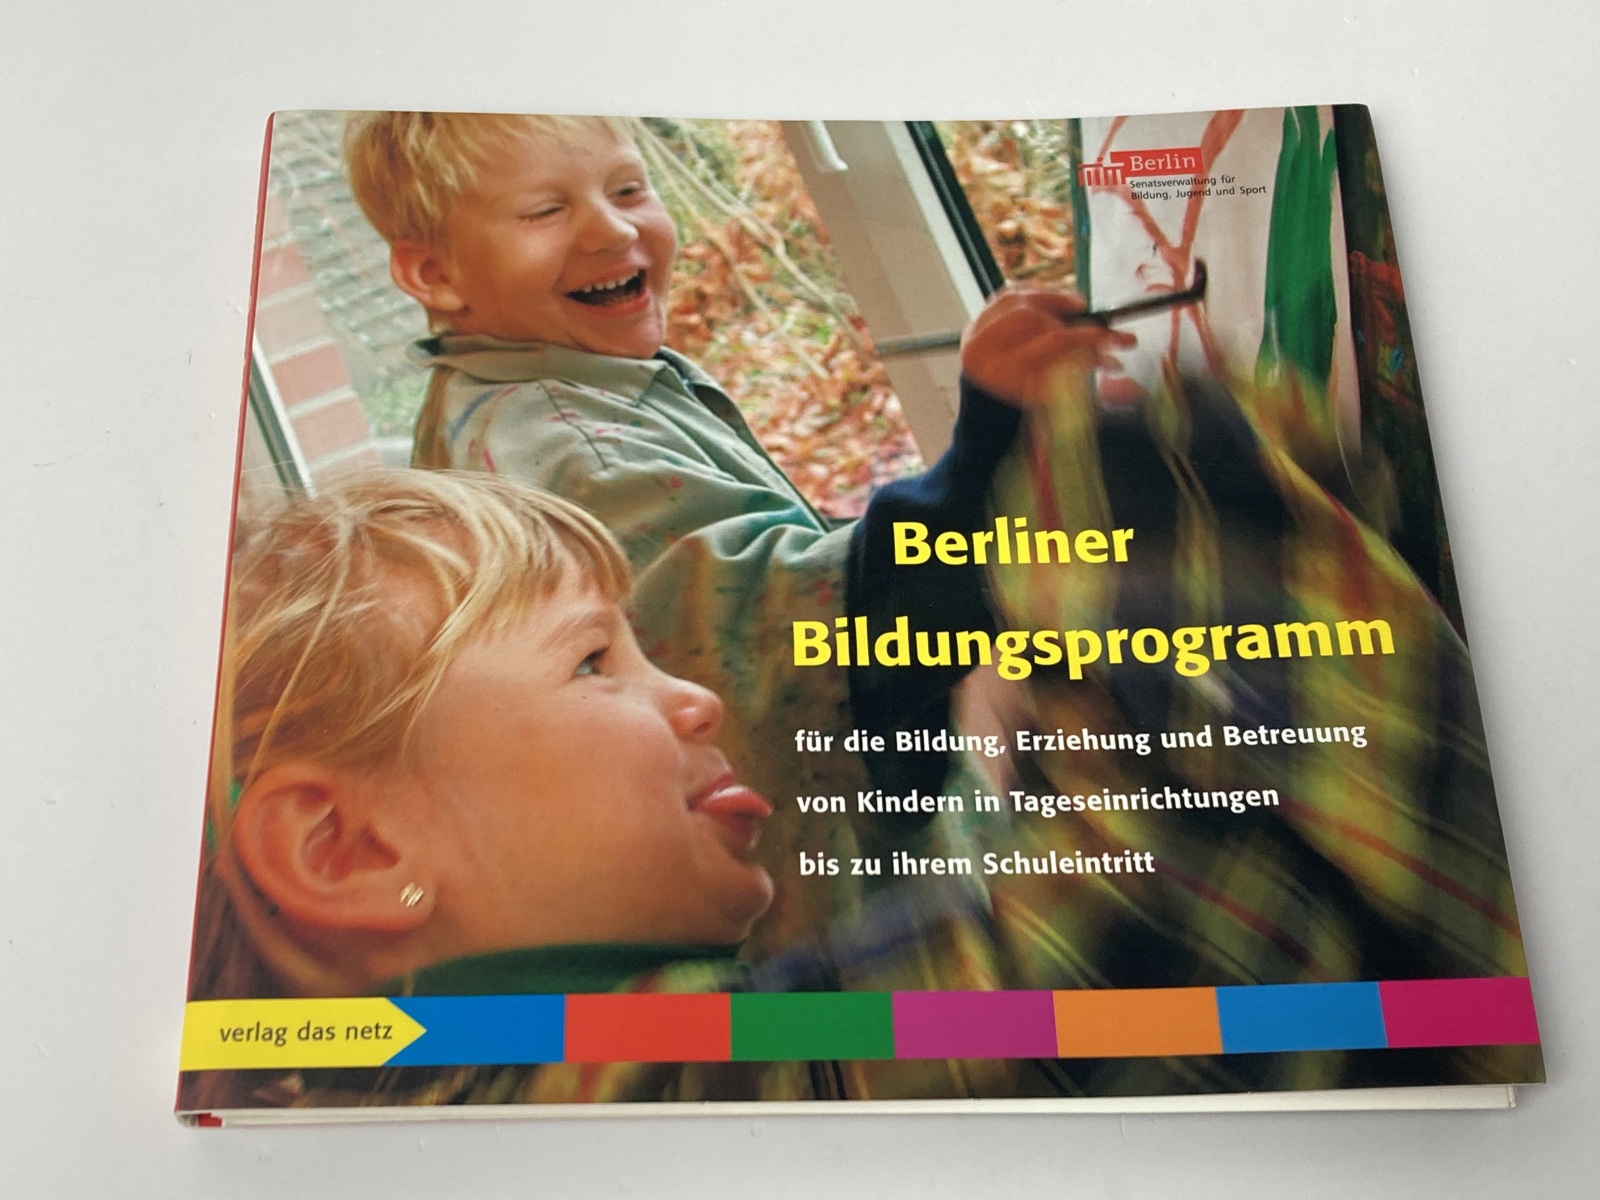 Berliner Bildungsprogramm für die Bildung, Erziehung und Betreuung von Kindern in Tageseinrichtungen bis zu ihrem Schuleintritt - Preissing, Christa